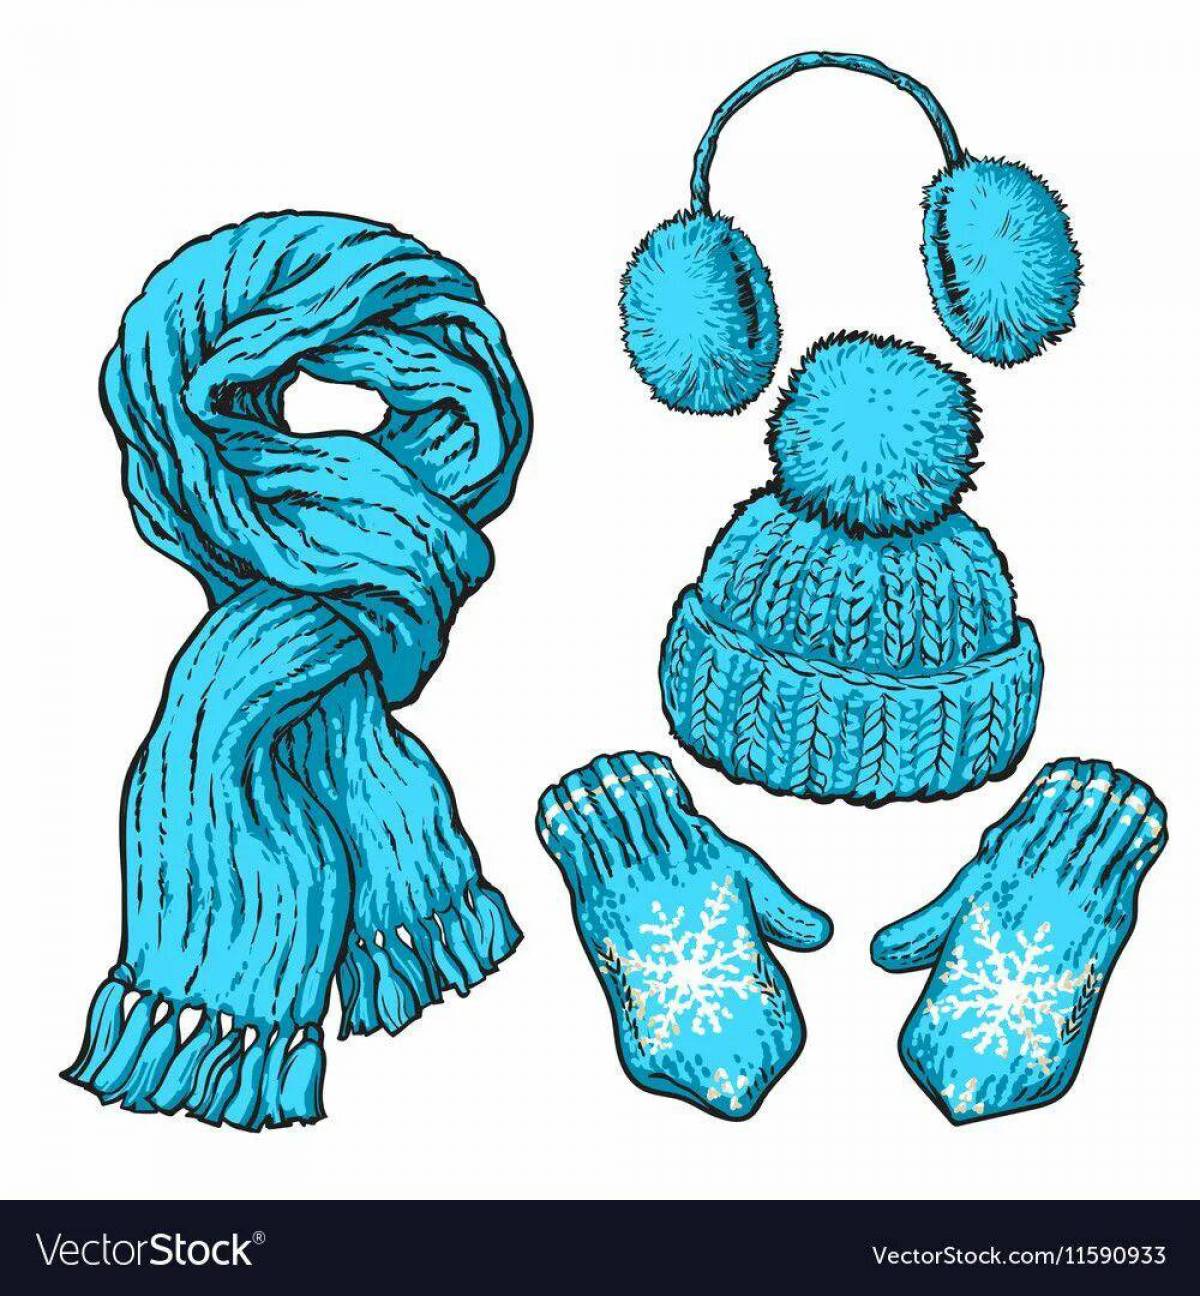 Шапка и шарф для детей #8